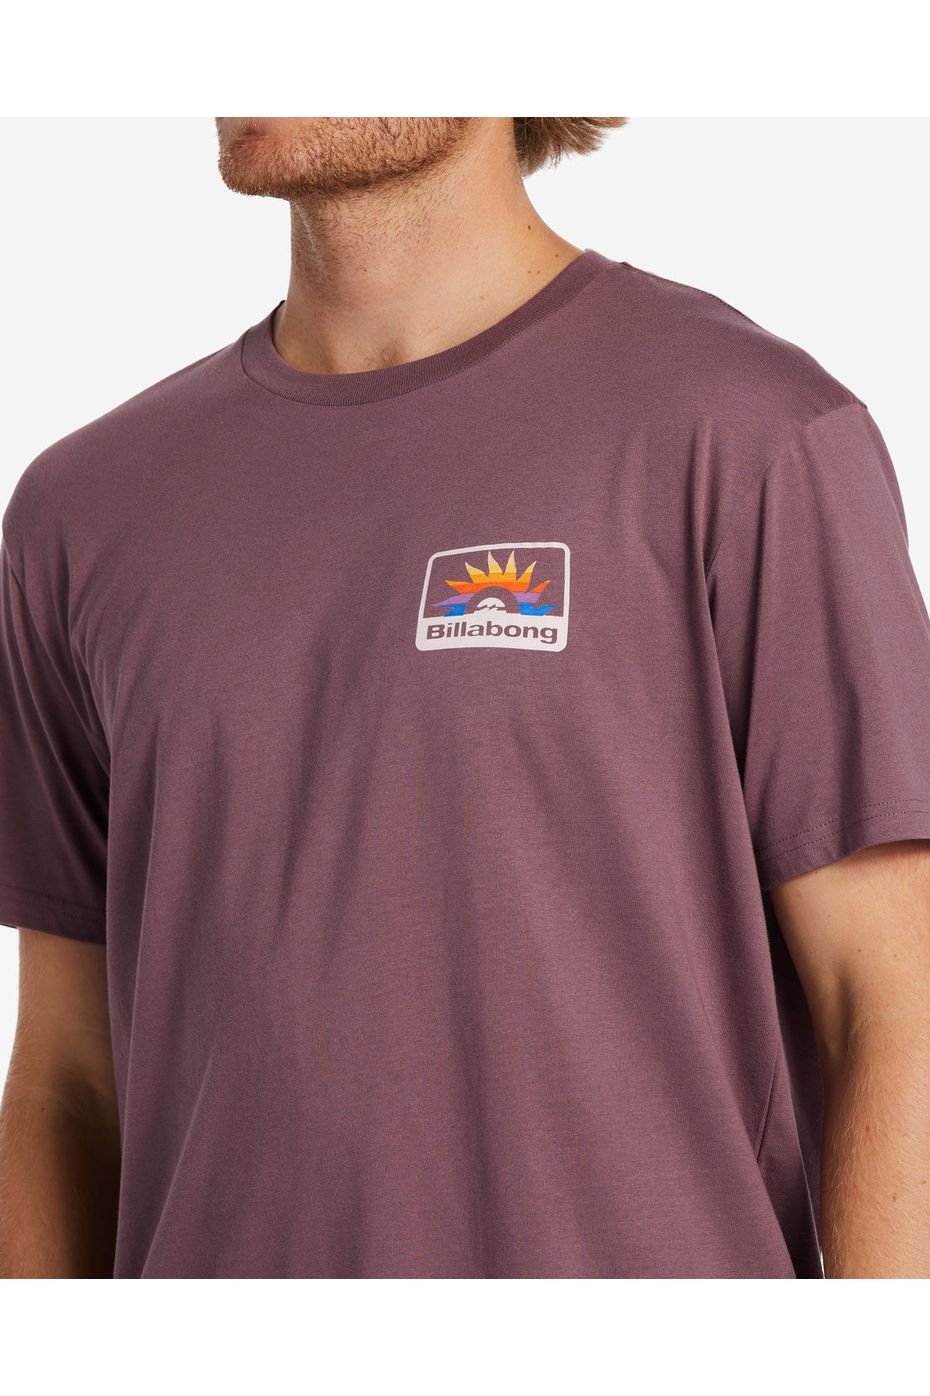 Billabong Walled Short Sleeve T-Shirt Vintage Violet